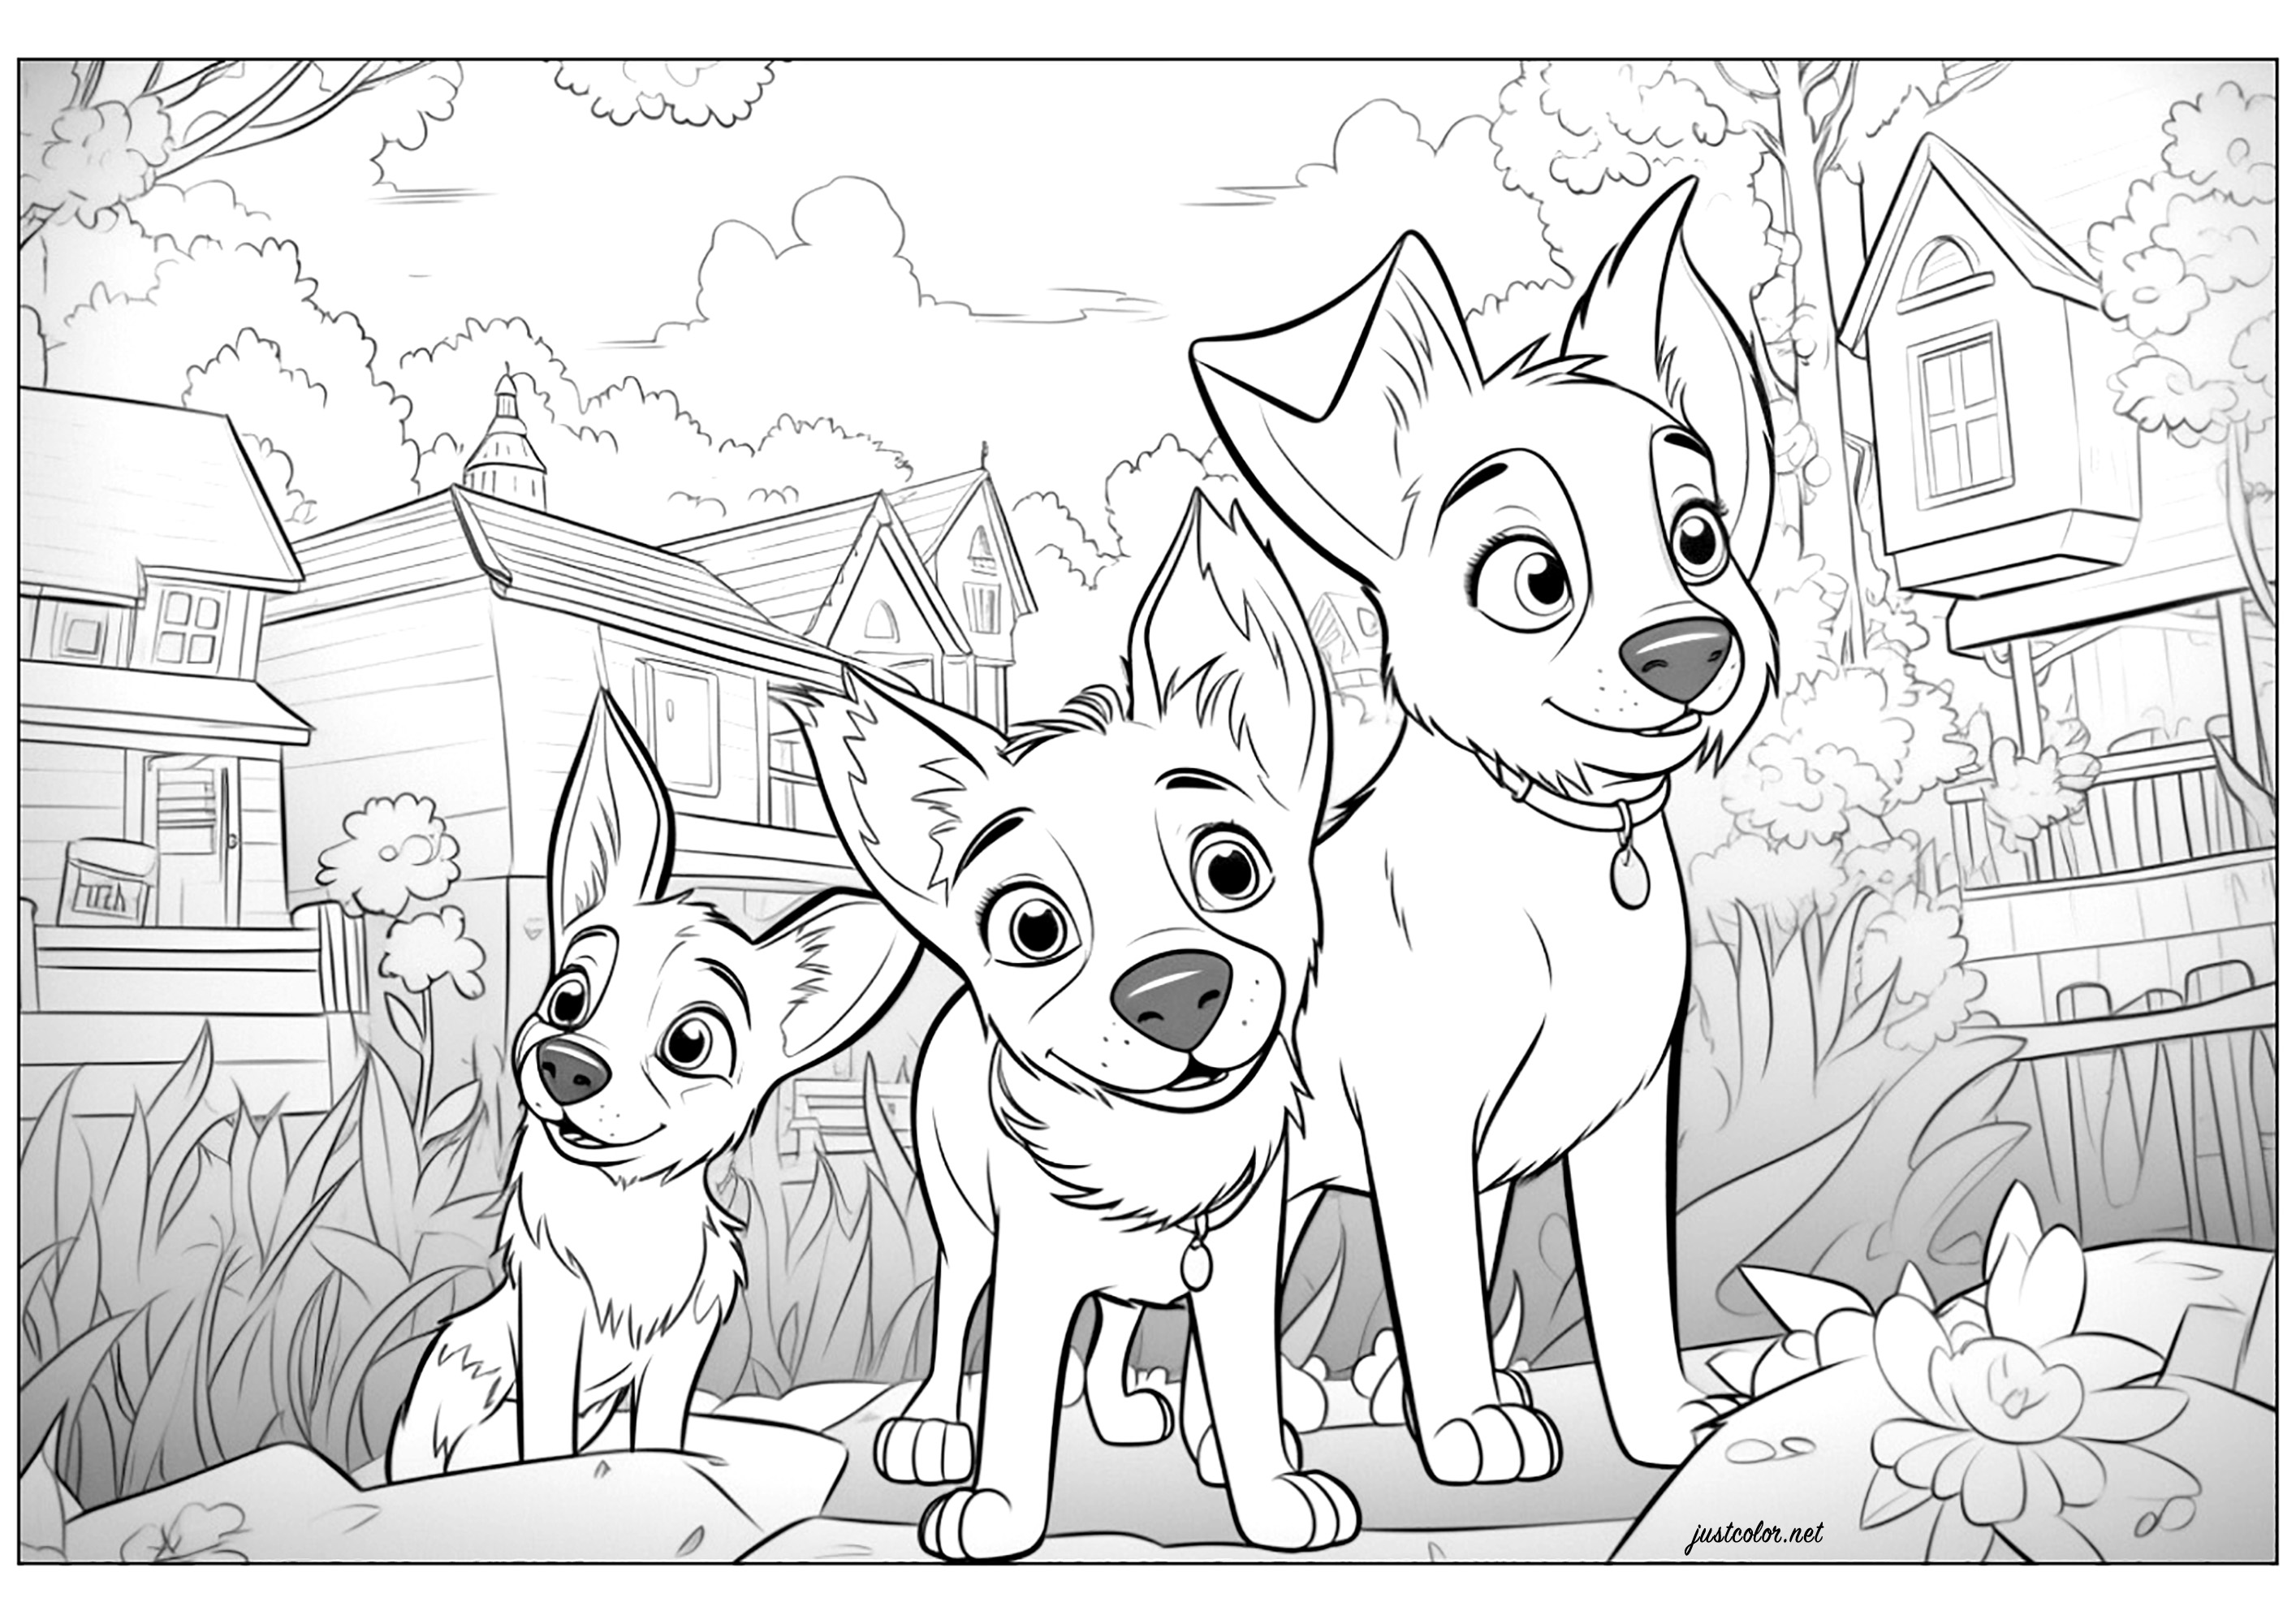 Trois chiens dessinés avec le style Disney - Pixar. Coloriez également toutes les maisons situées en arrière-plan de cette illustration originale